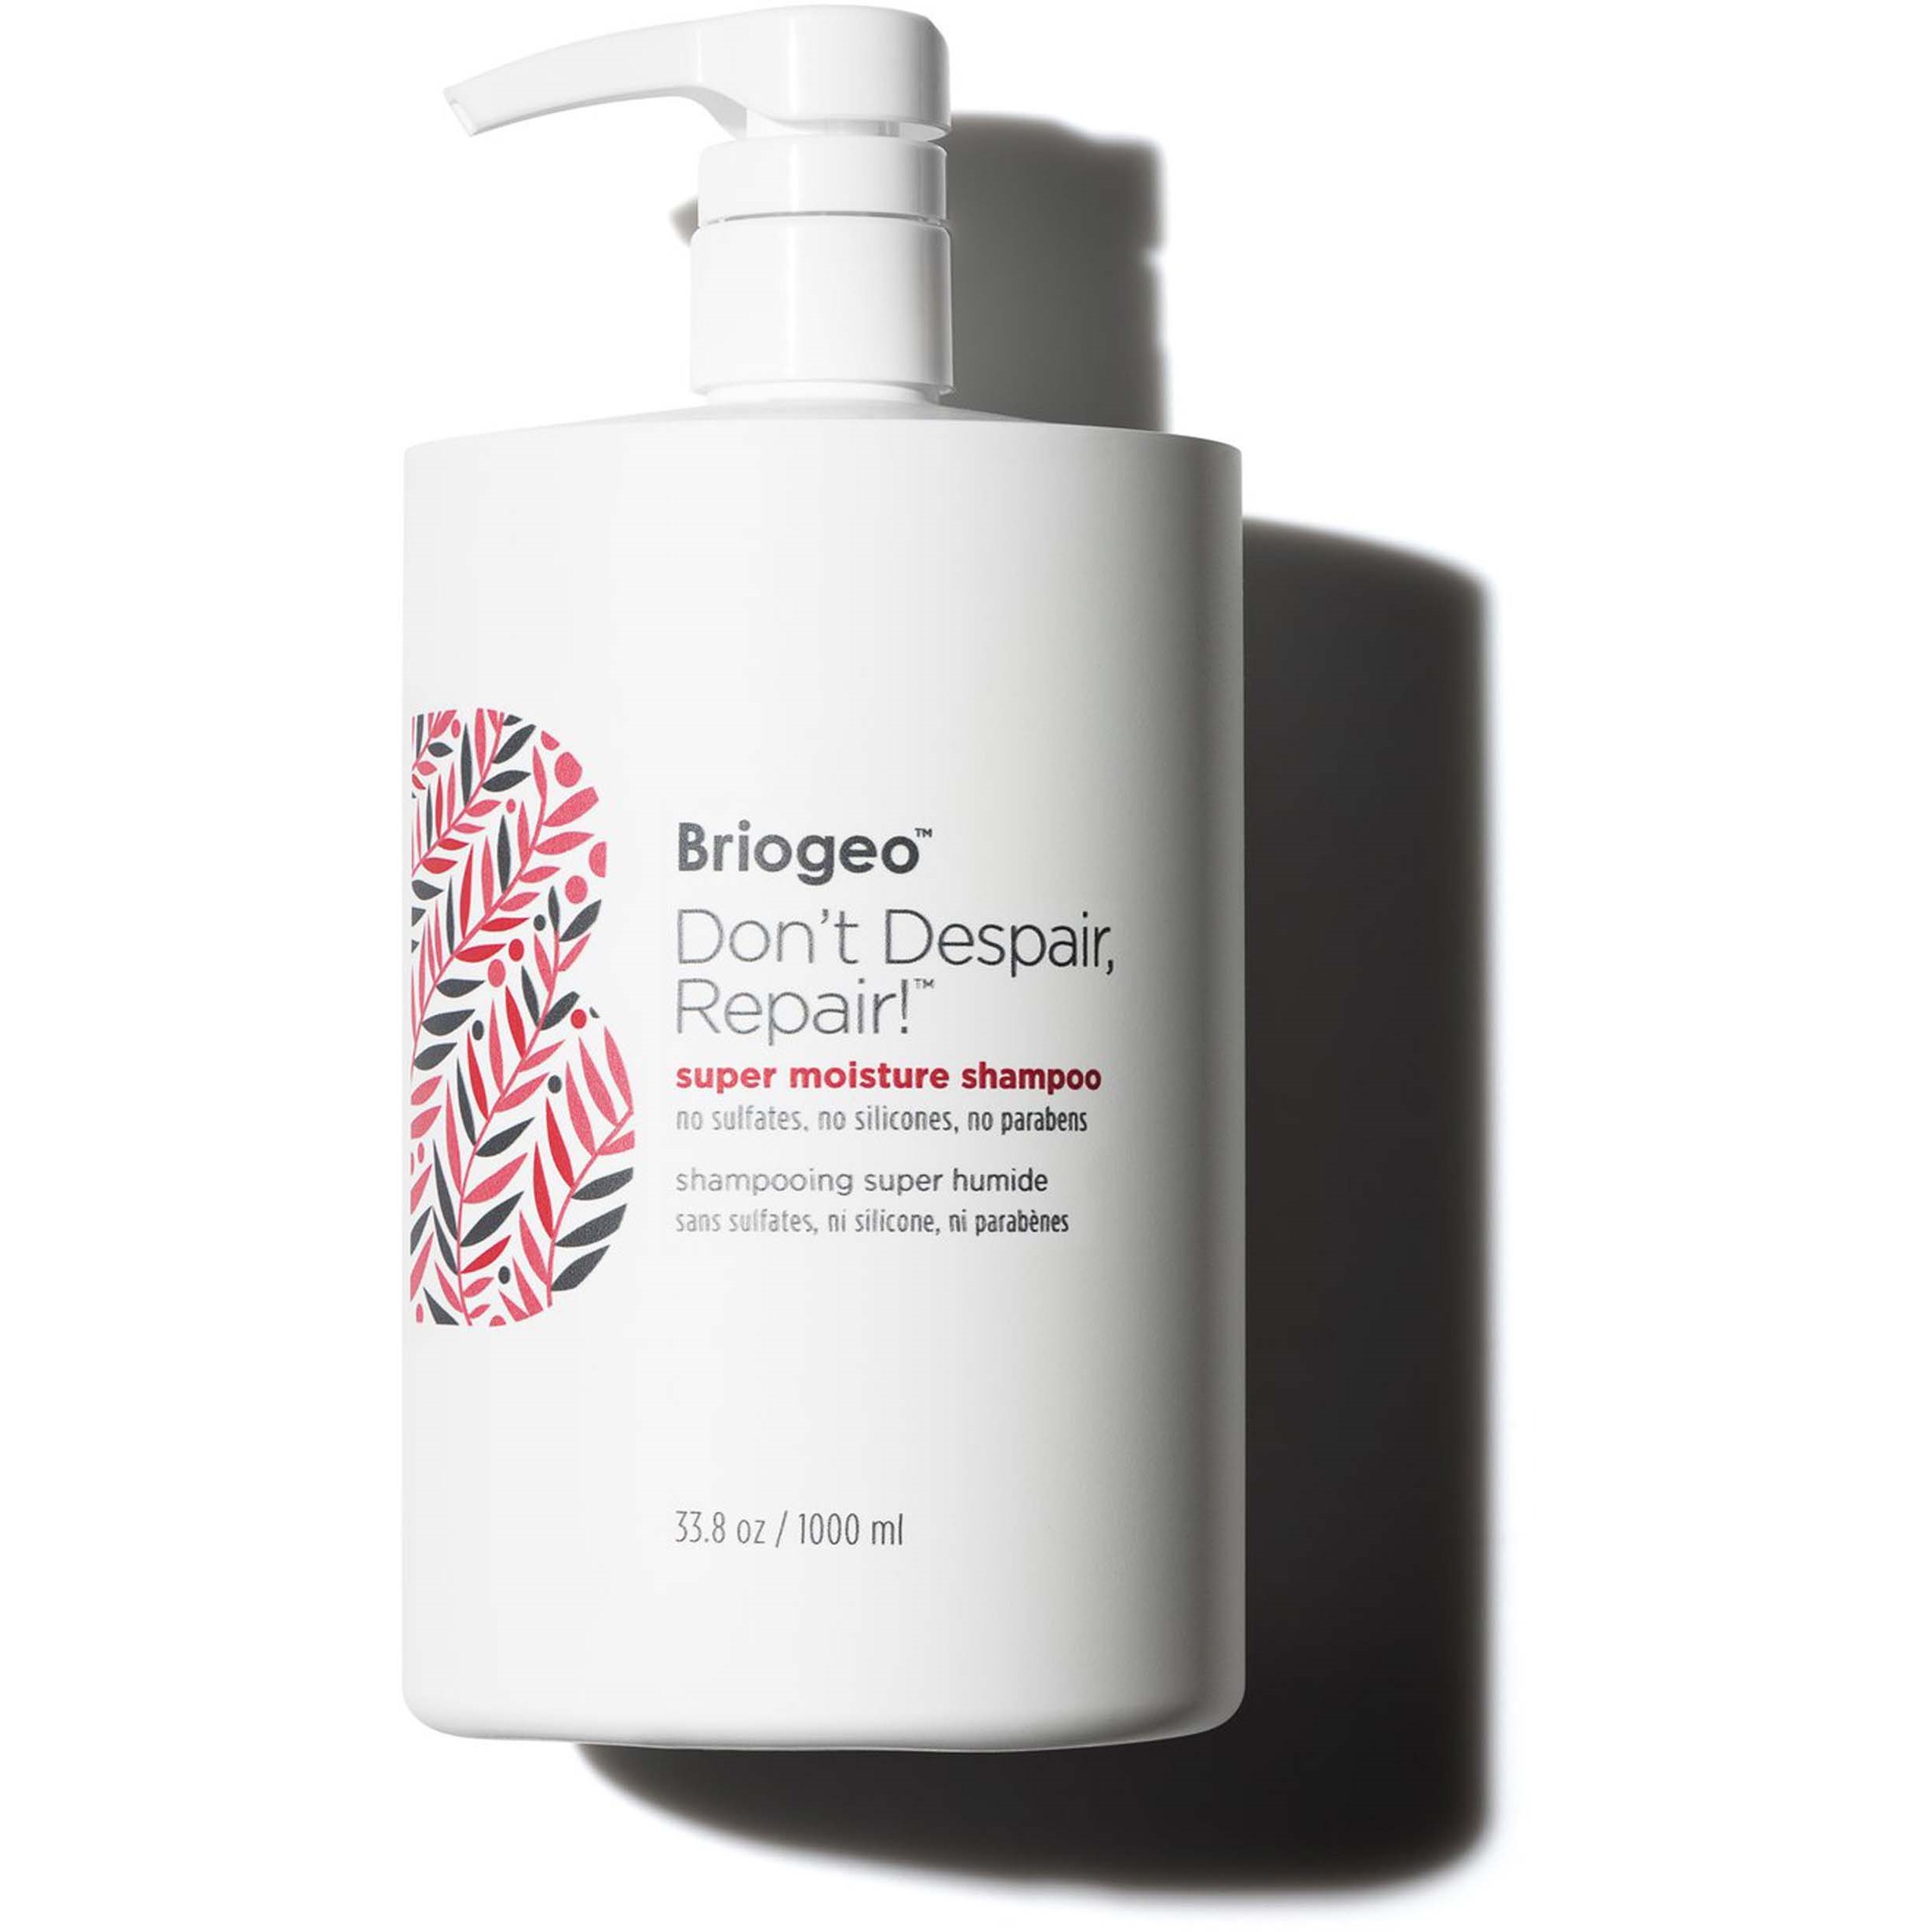 Briogeo Don't Despair, Repair!™ Super Moisture Shampoo 1000 ml